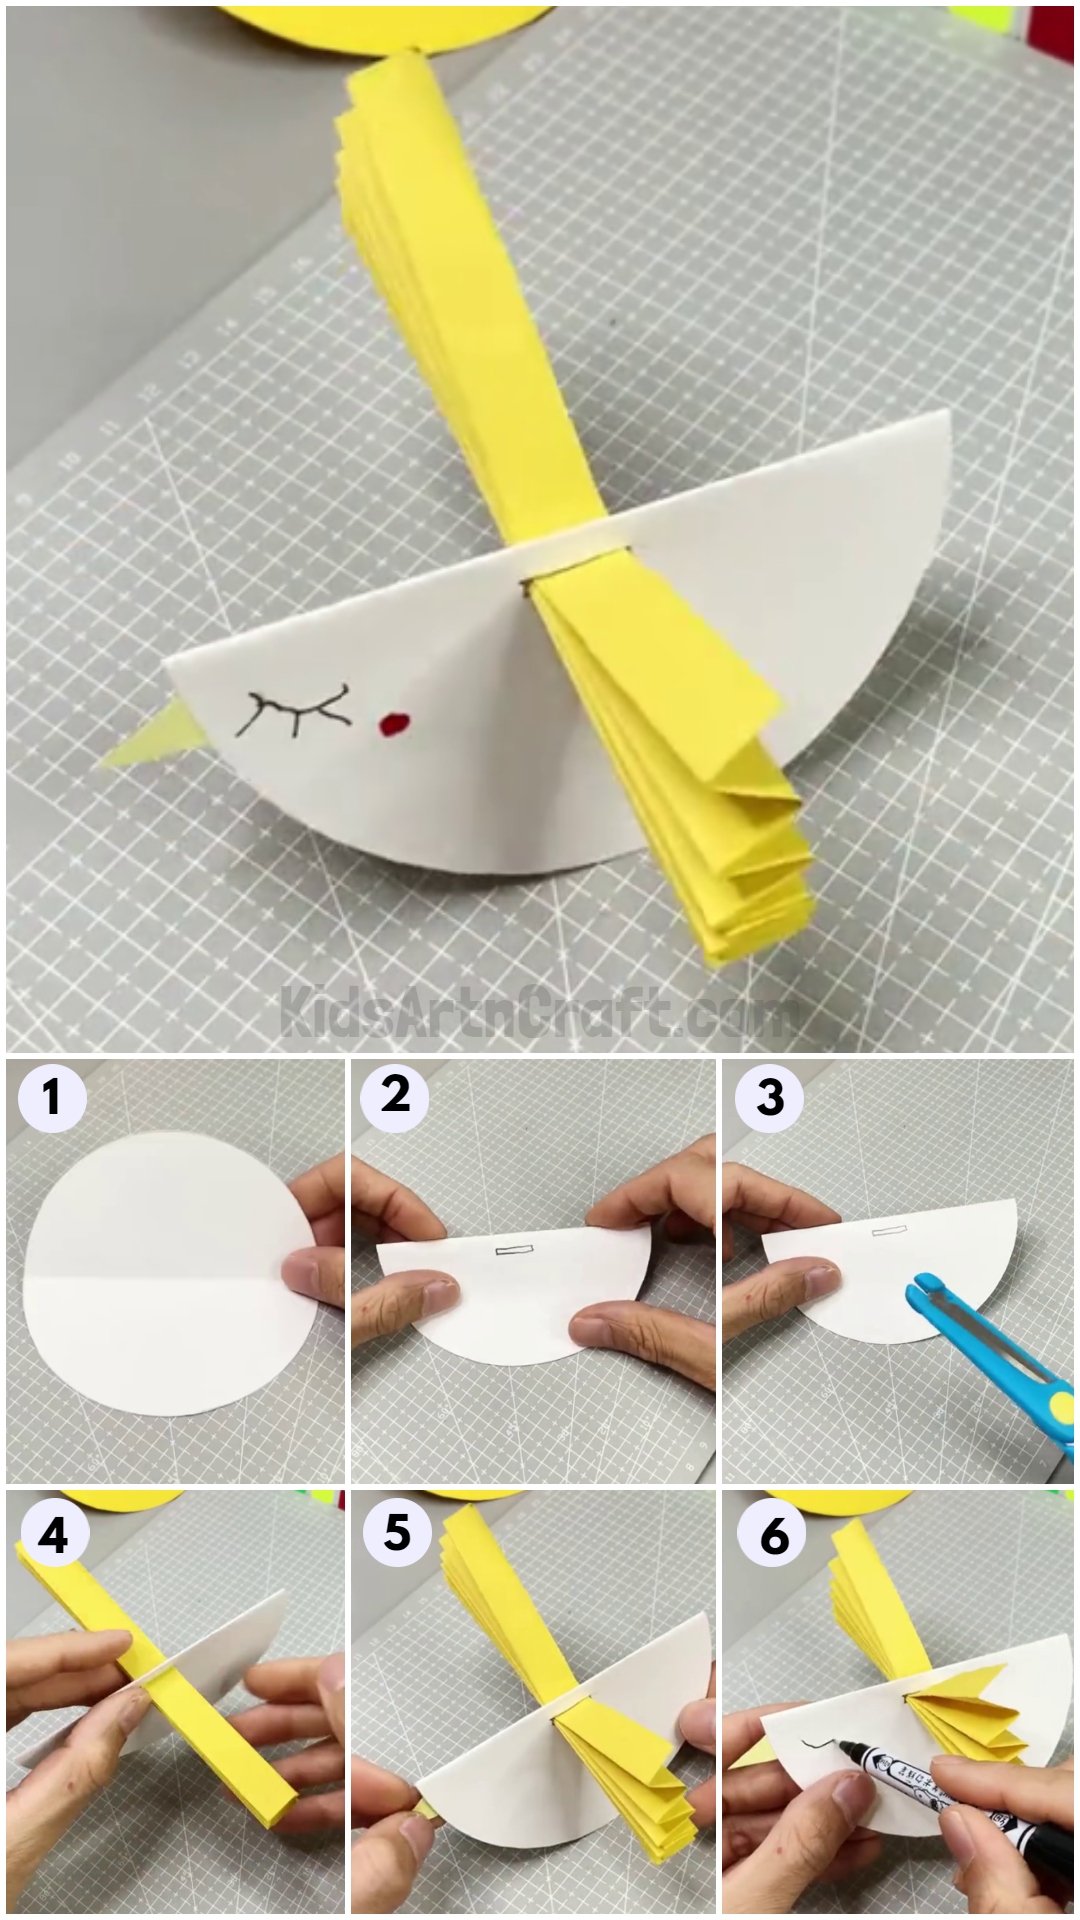 Rocking Paper Bird Craft Tutorials for Kids